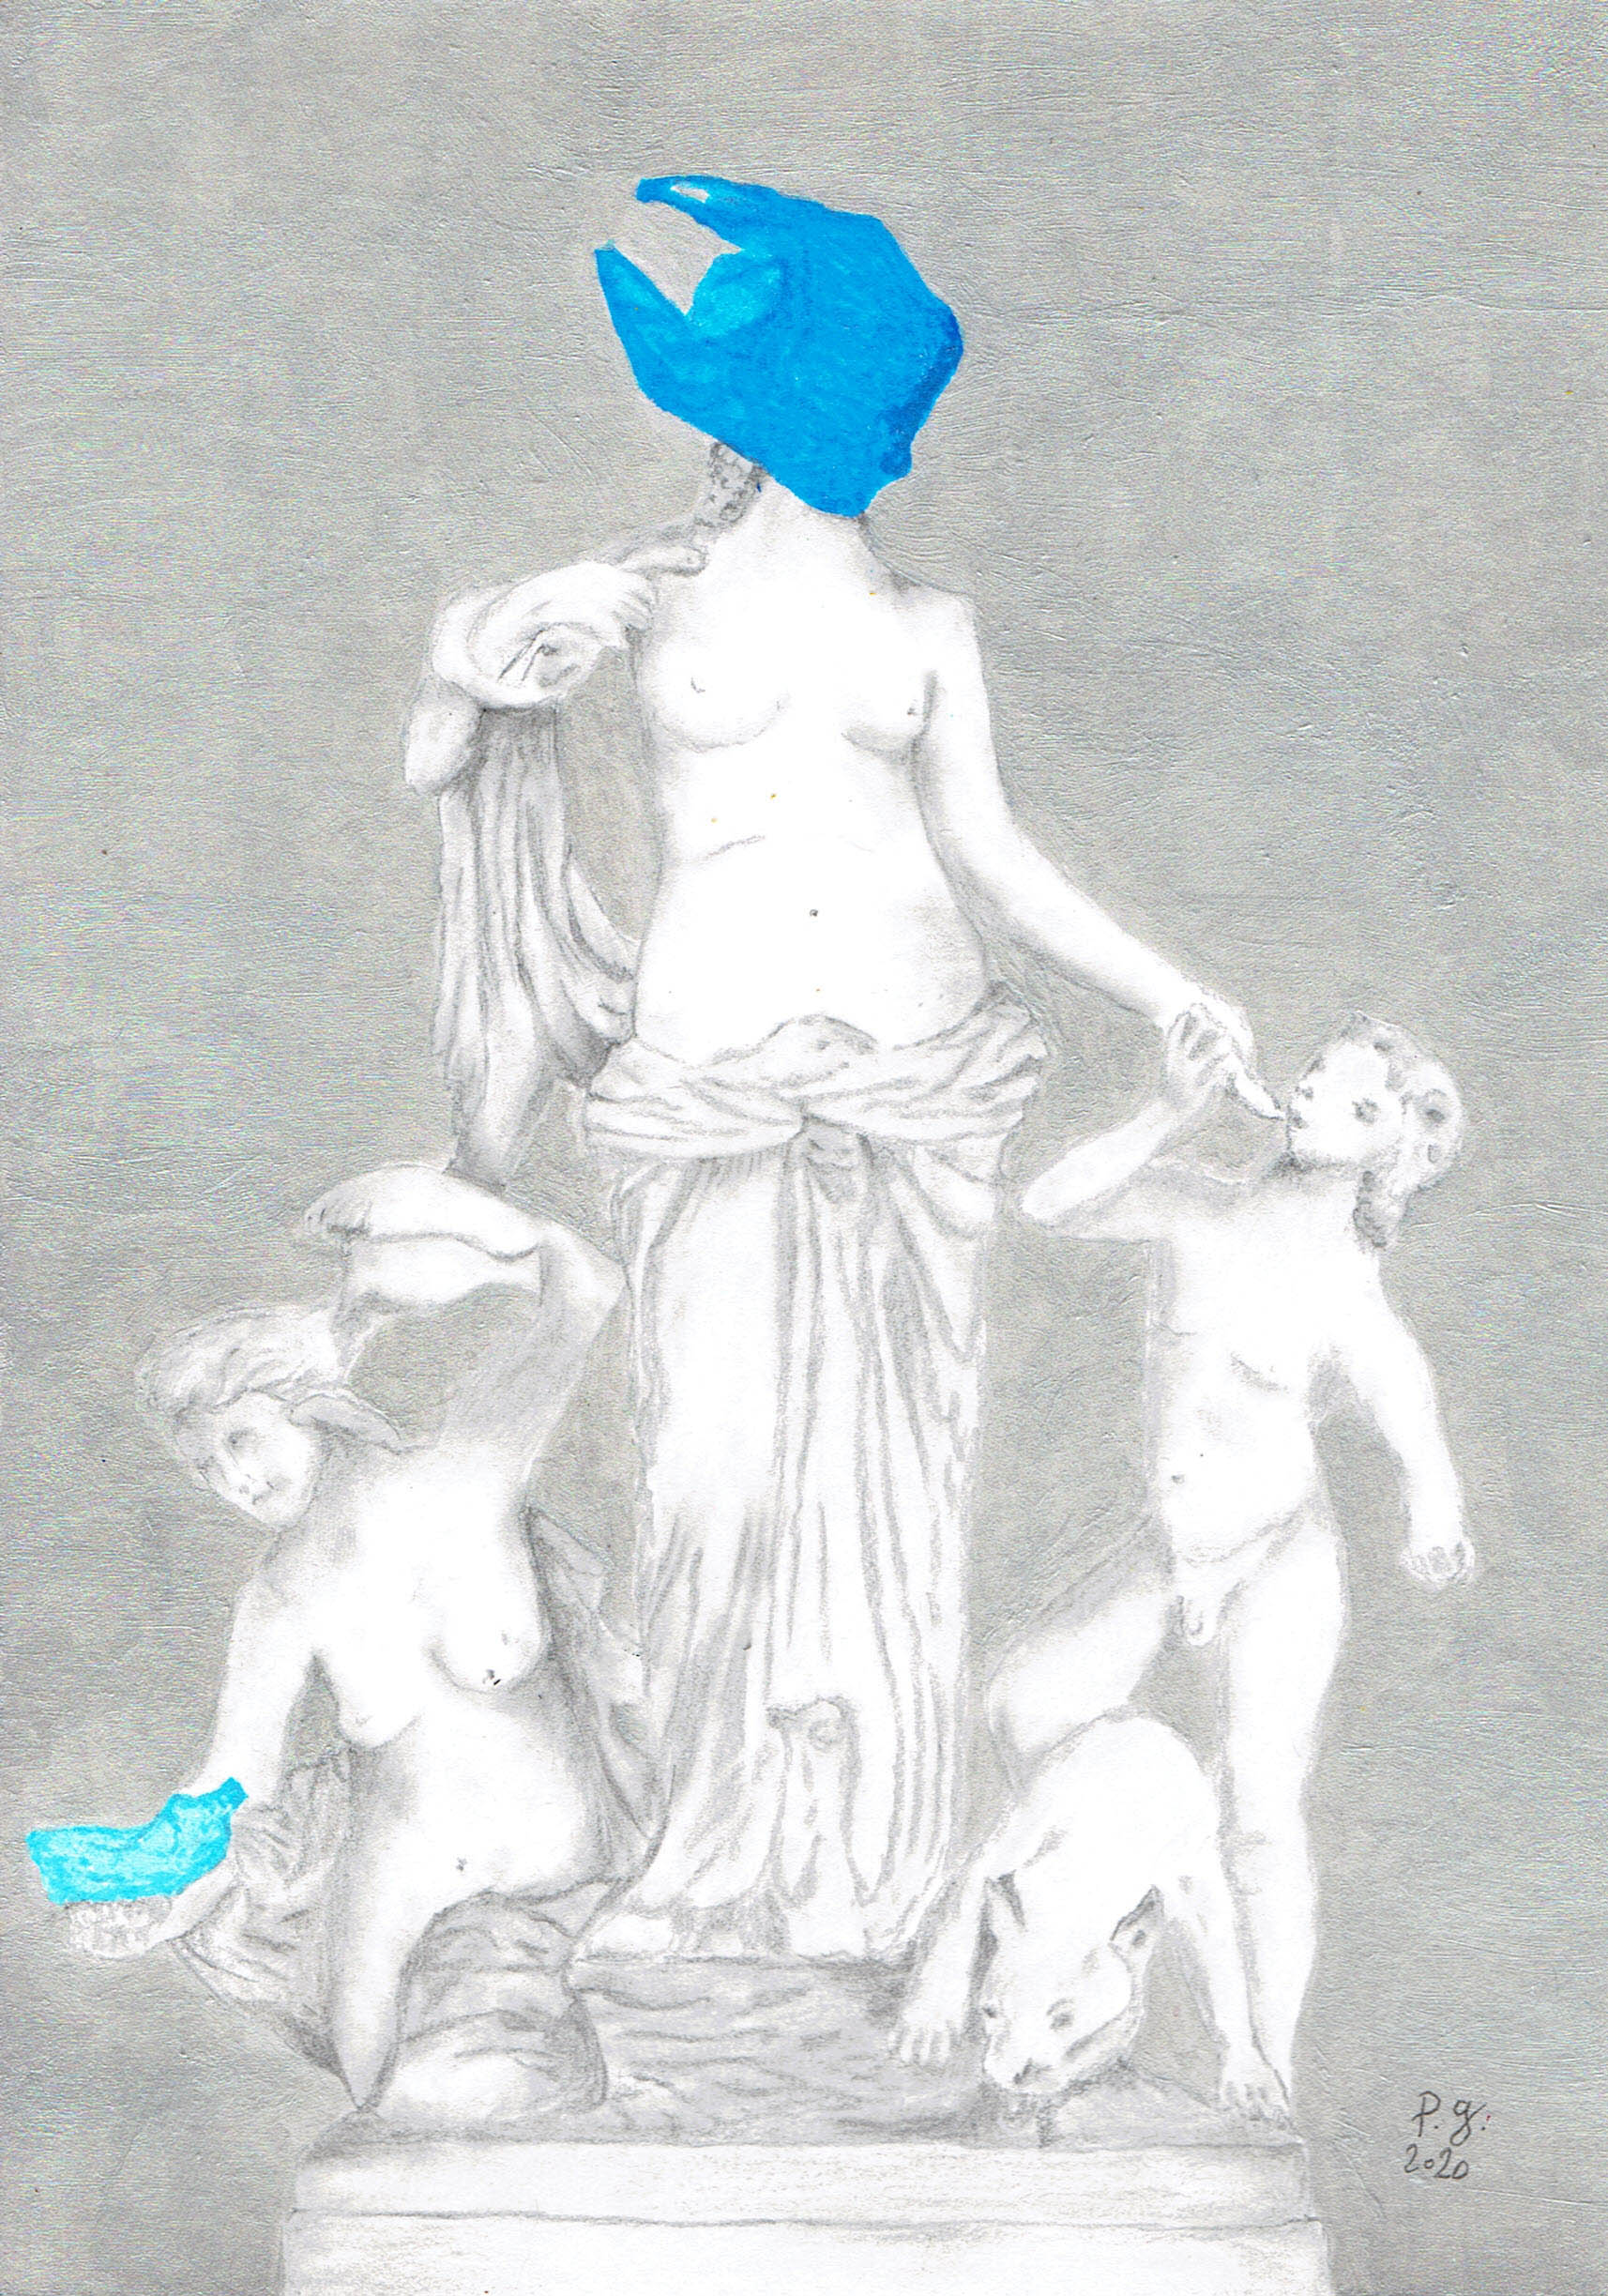 patrick gourgouillat - "Blue Wave [Human Behavior]" - 2020